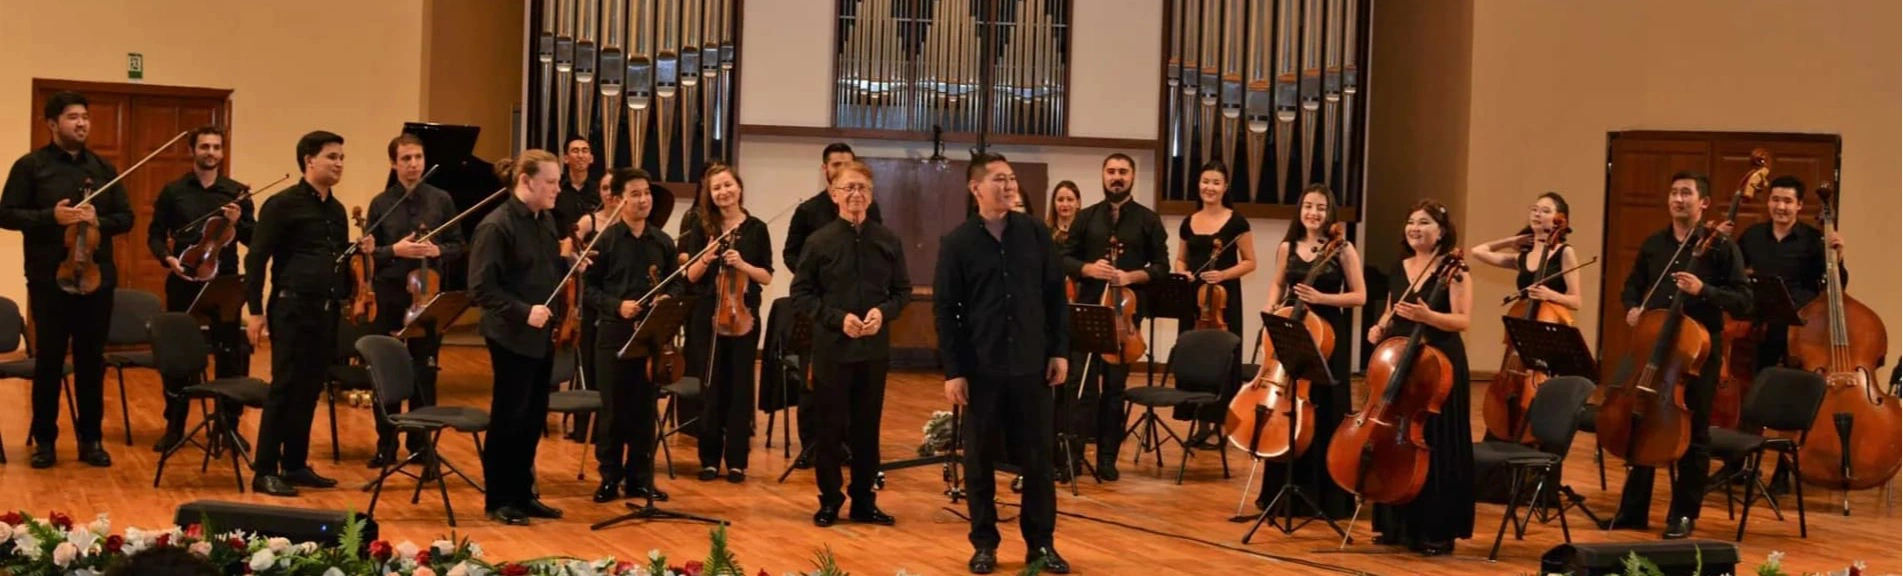 Концерт Молодежного камерного оркестра в филармонии Шостаковича